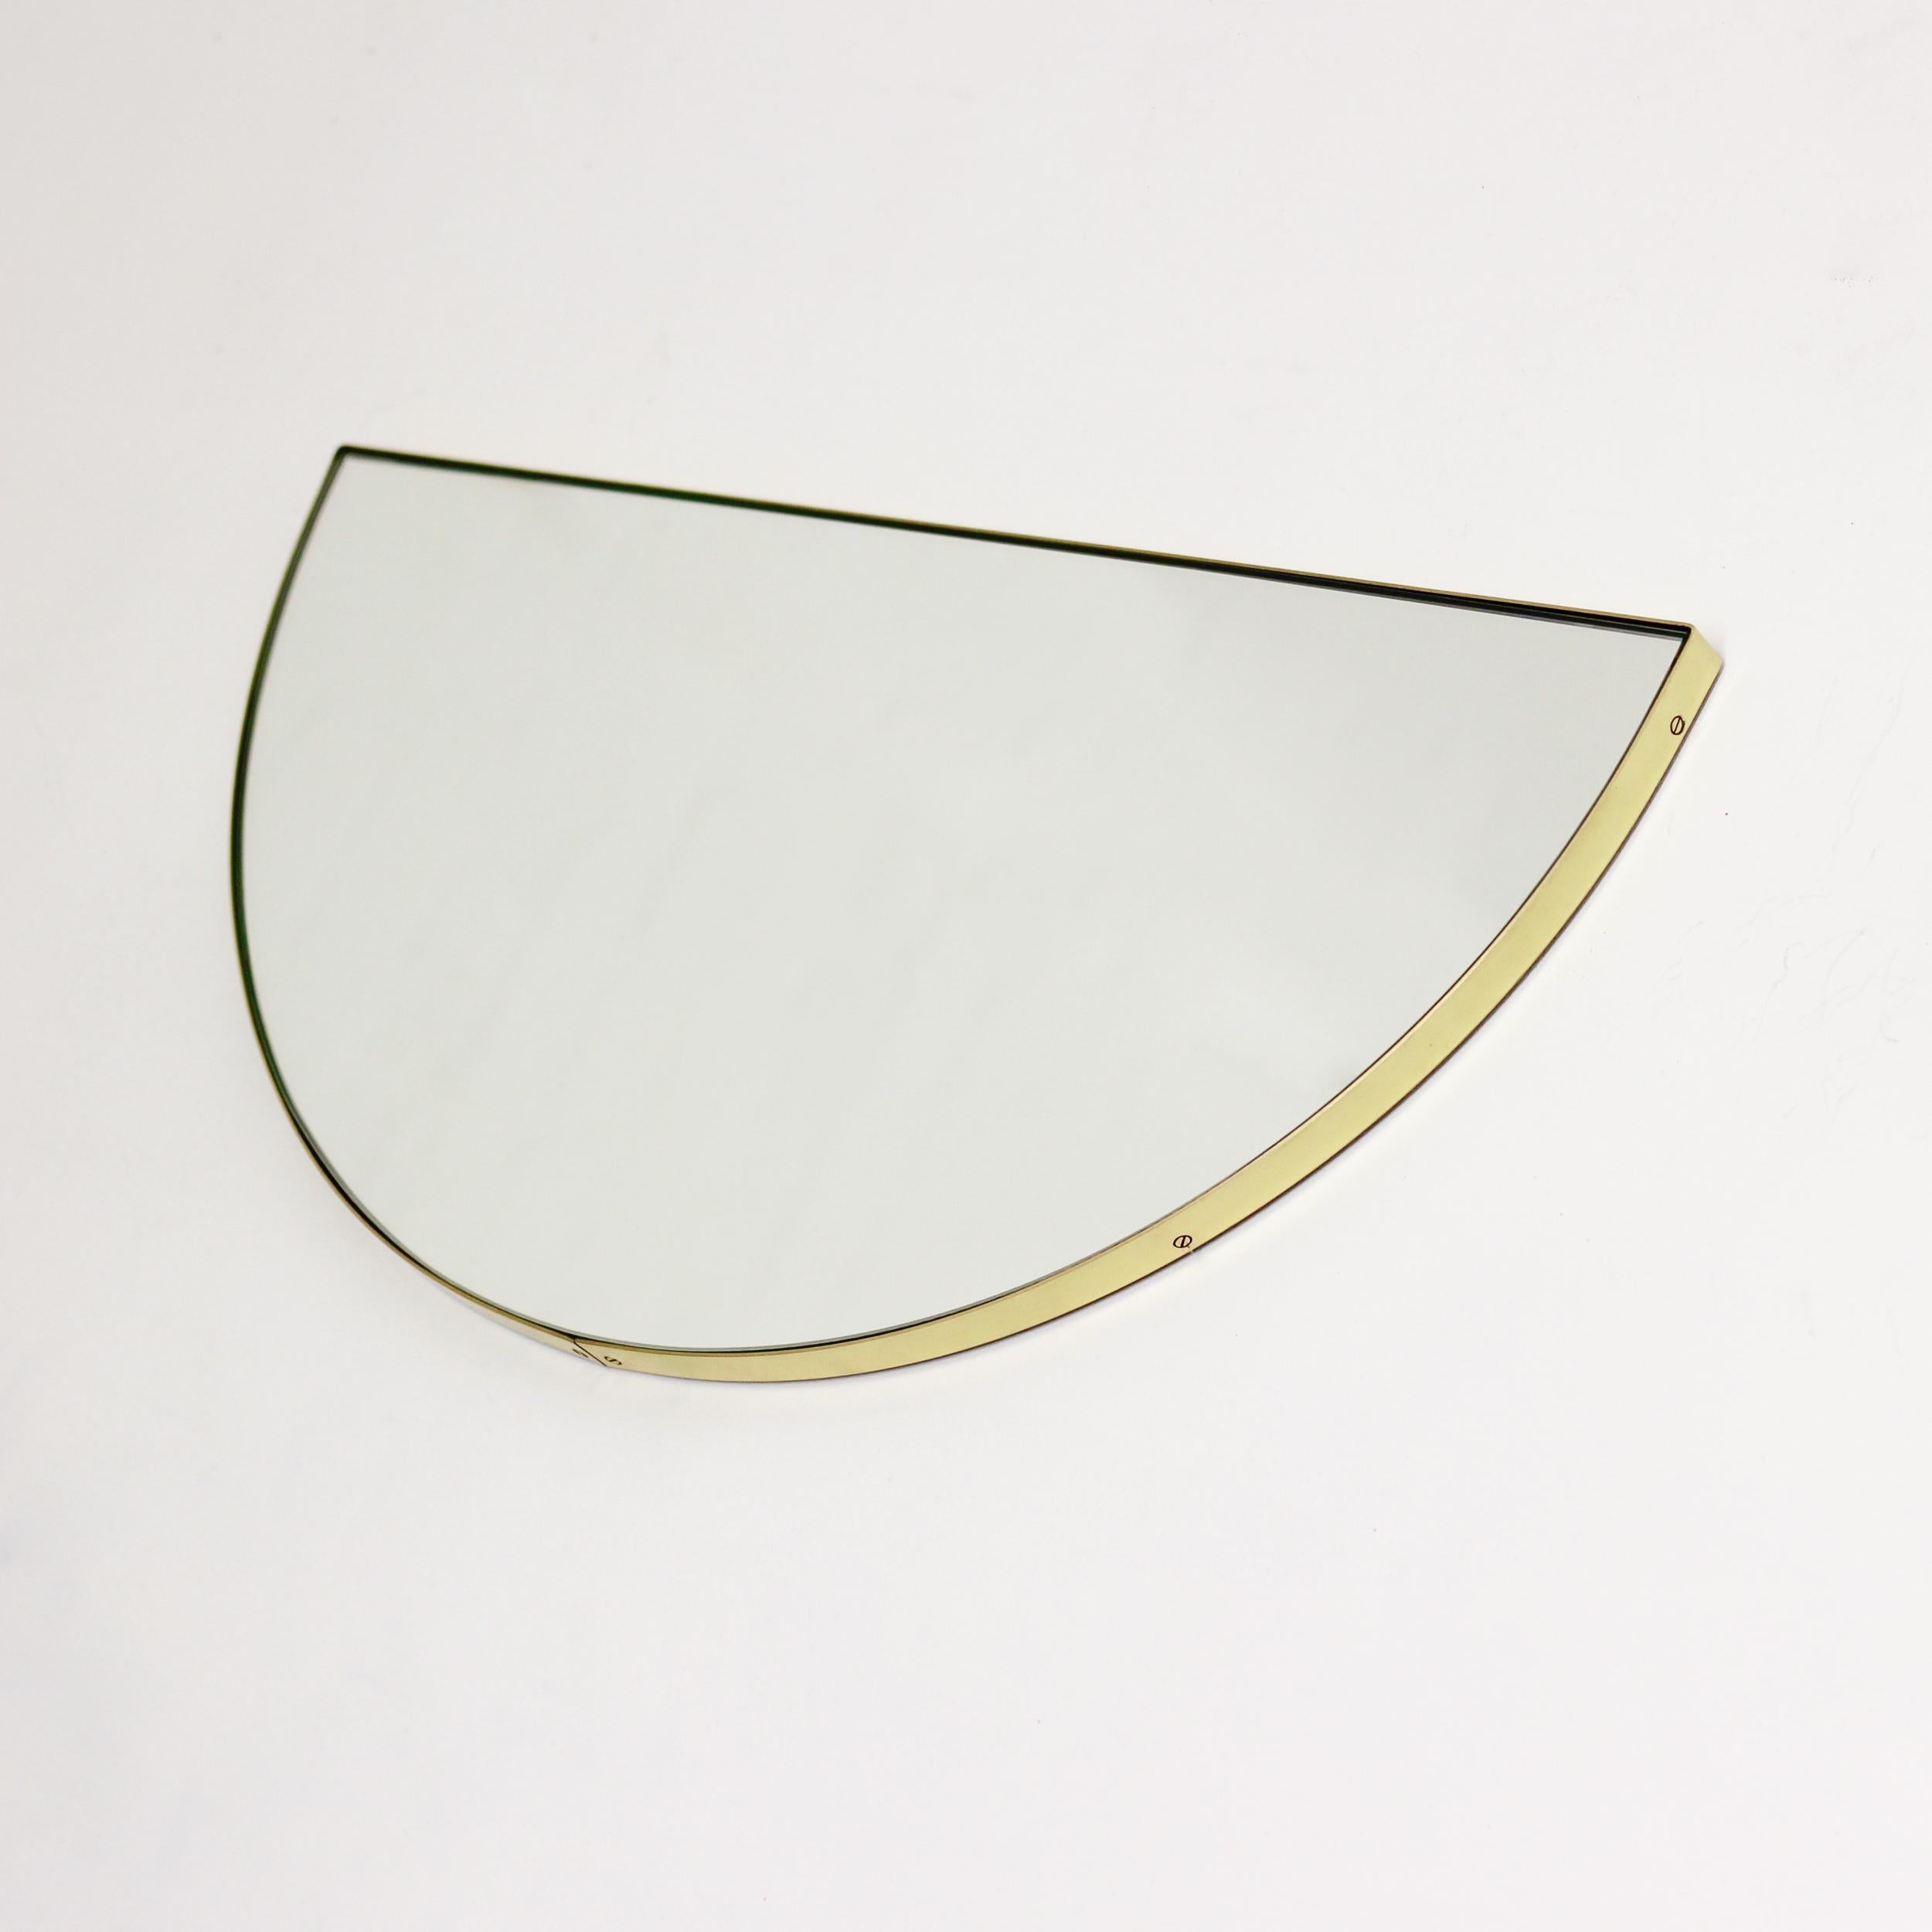 Miroir demi-lune original et minimaliste avec un élégant cadre en laiton brossé. Un design de qualité qui garantit que le miroir est parfaitement parallèle au mur. Conçu et fabriqué à Londres, au Royaume-Uni.
 
Équipé d'un ingénieux système de